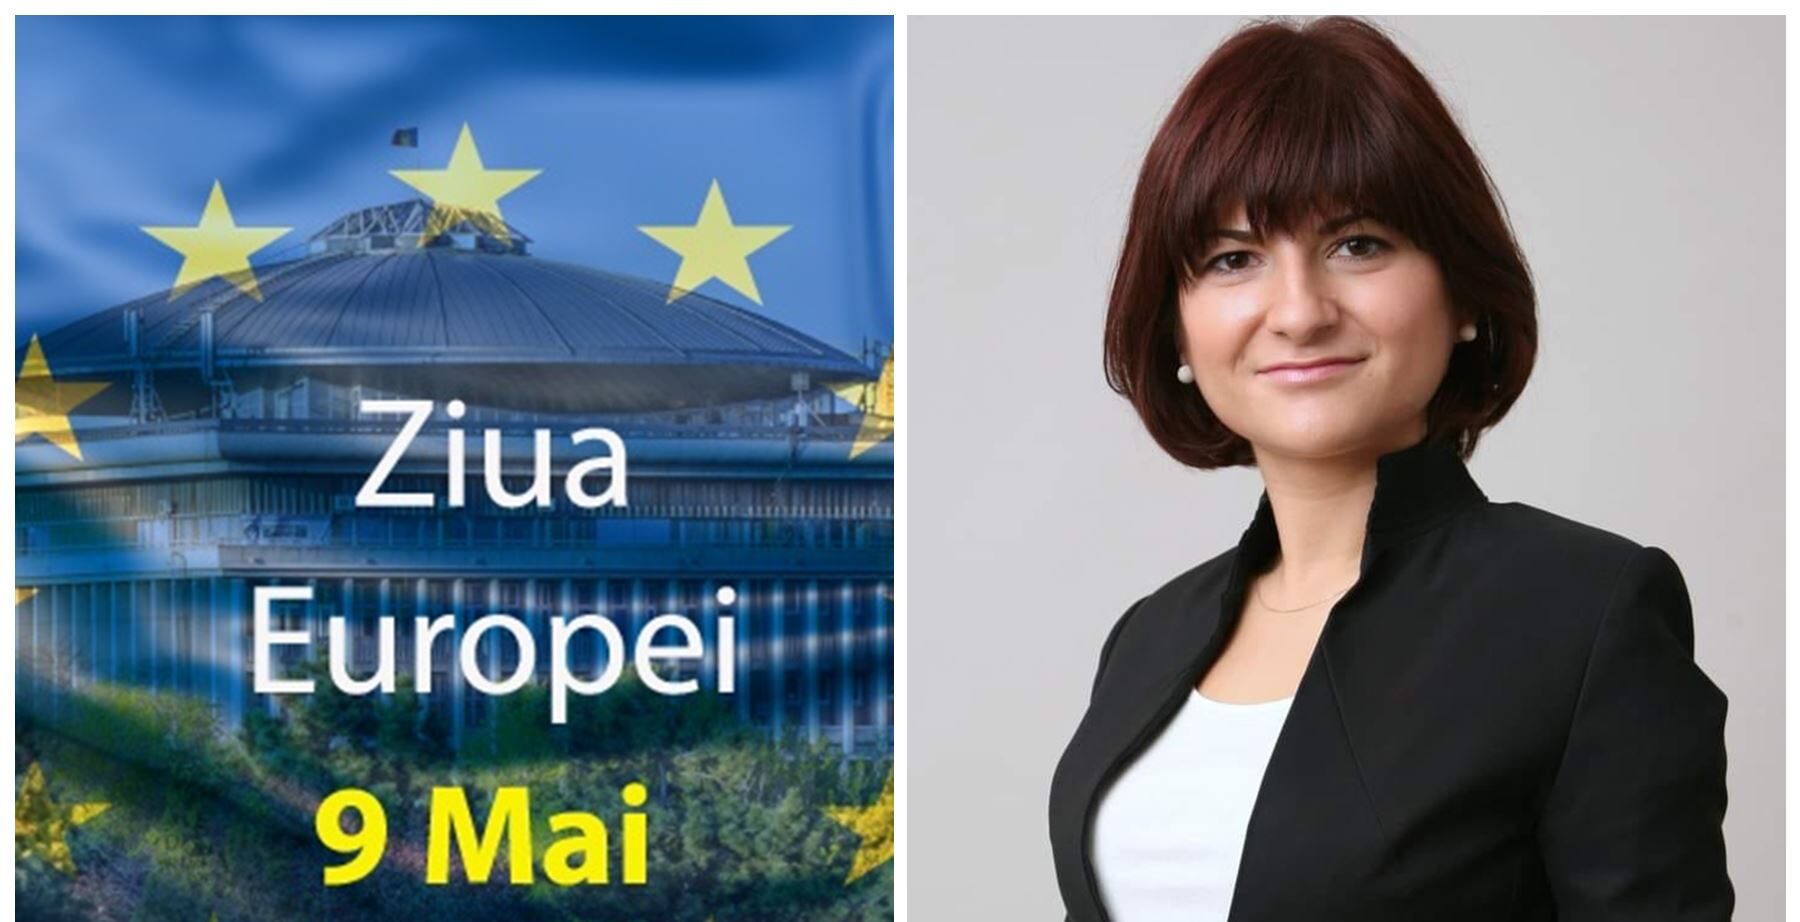 Cristina Dumitrache, PSD: „De Ziua Europei îmi doresc mai mult ca oricând ca România să găsească mijloacele prin care să își redefinească poziția în mod pragmatic și eficient”